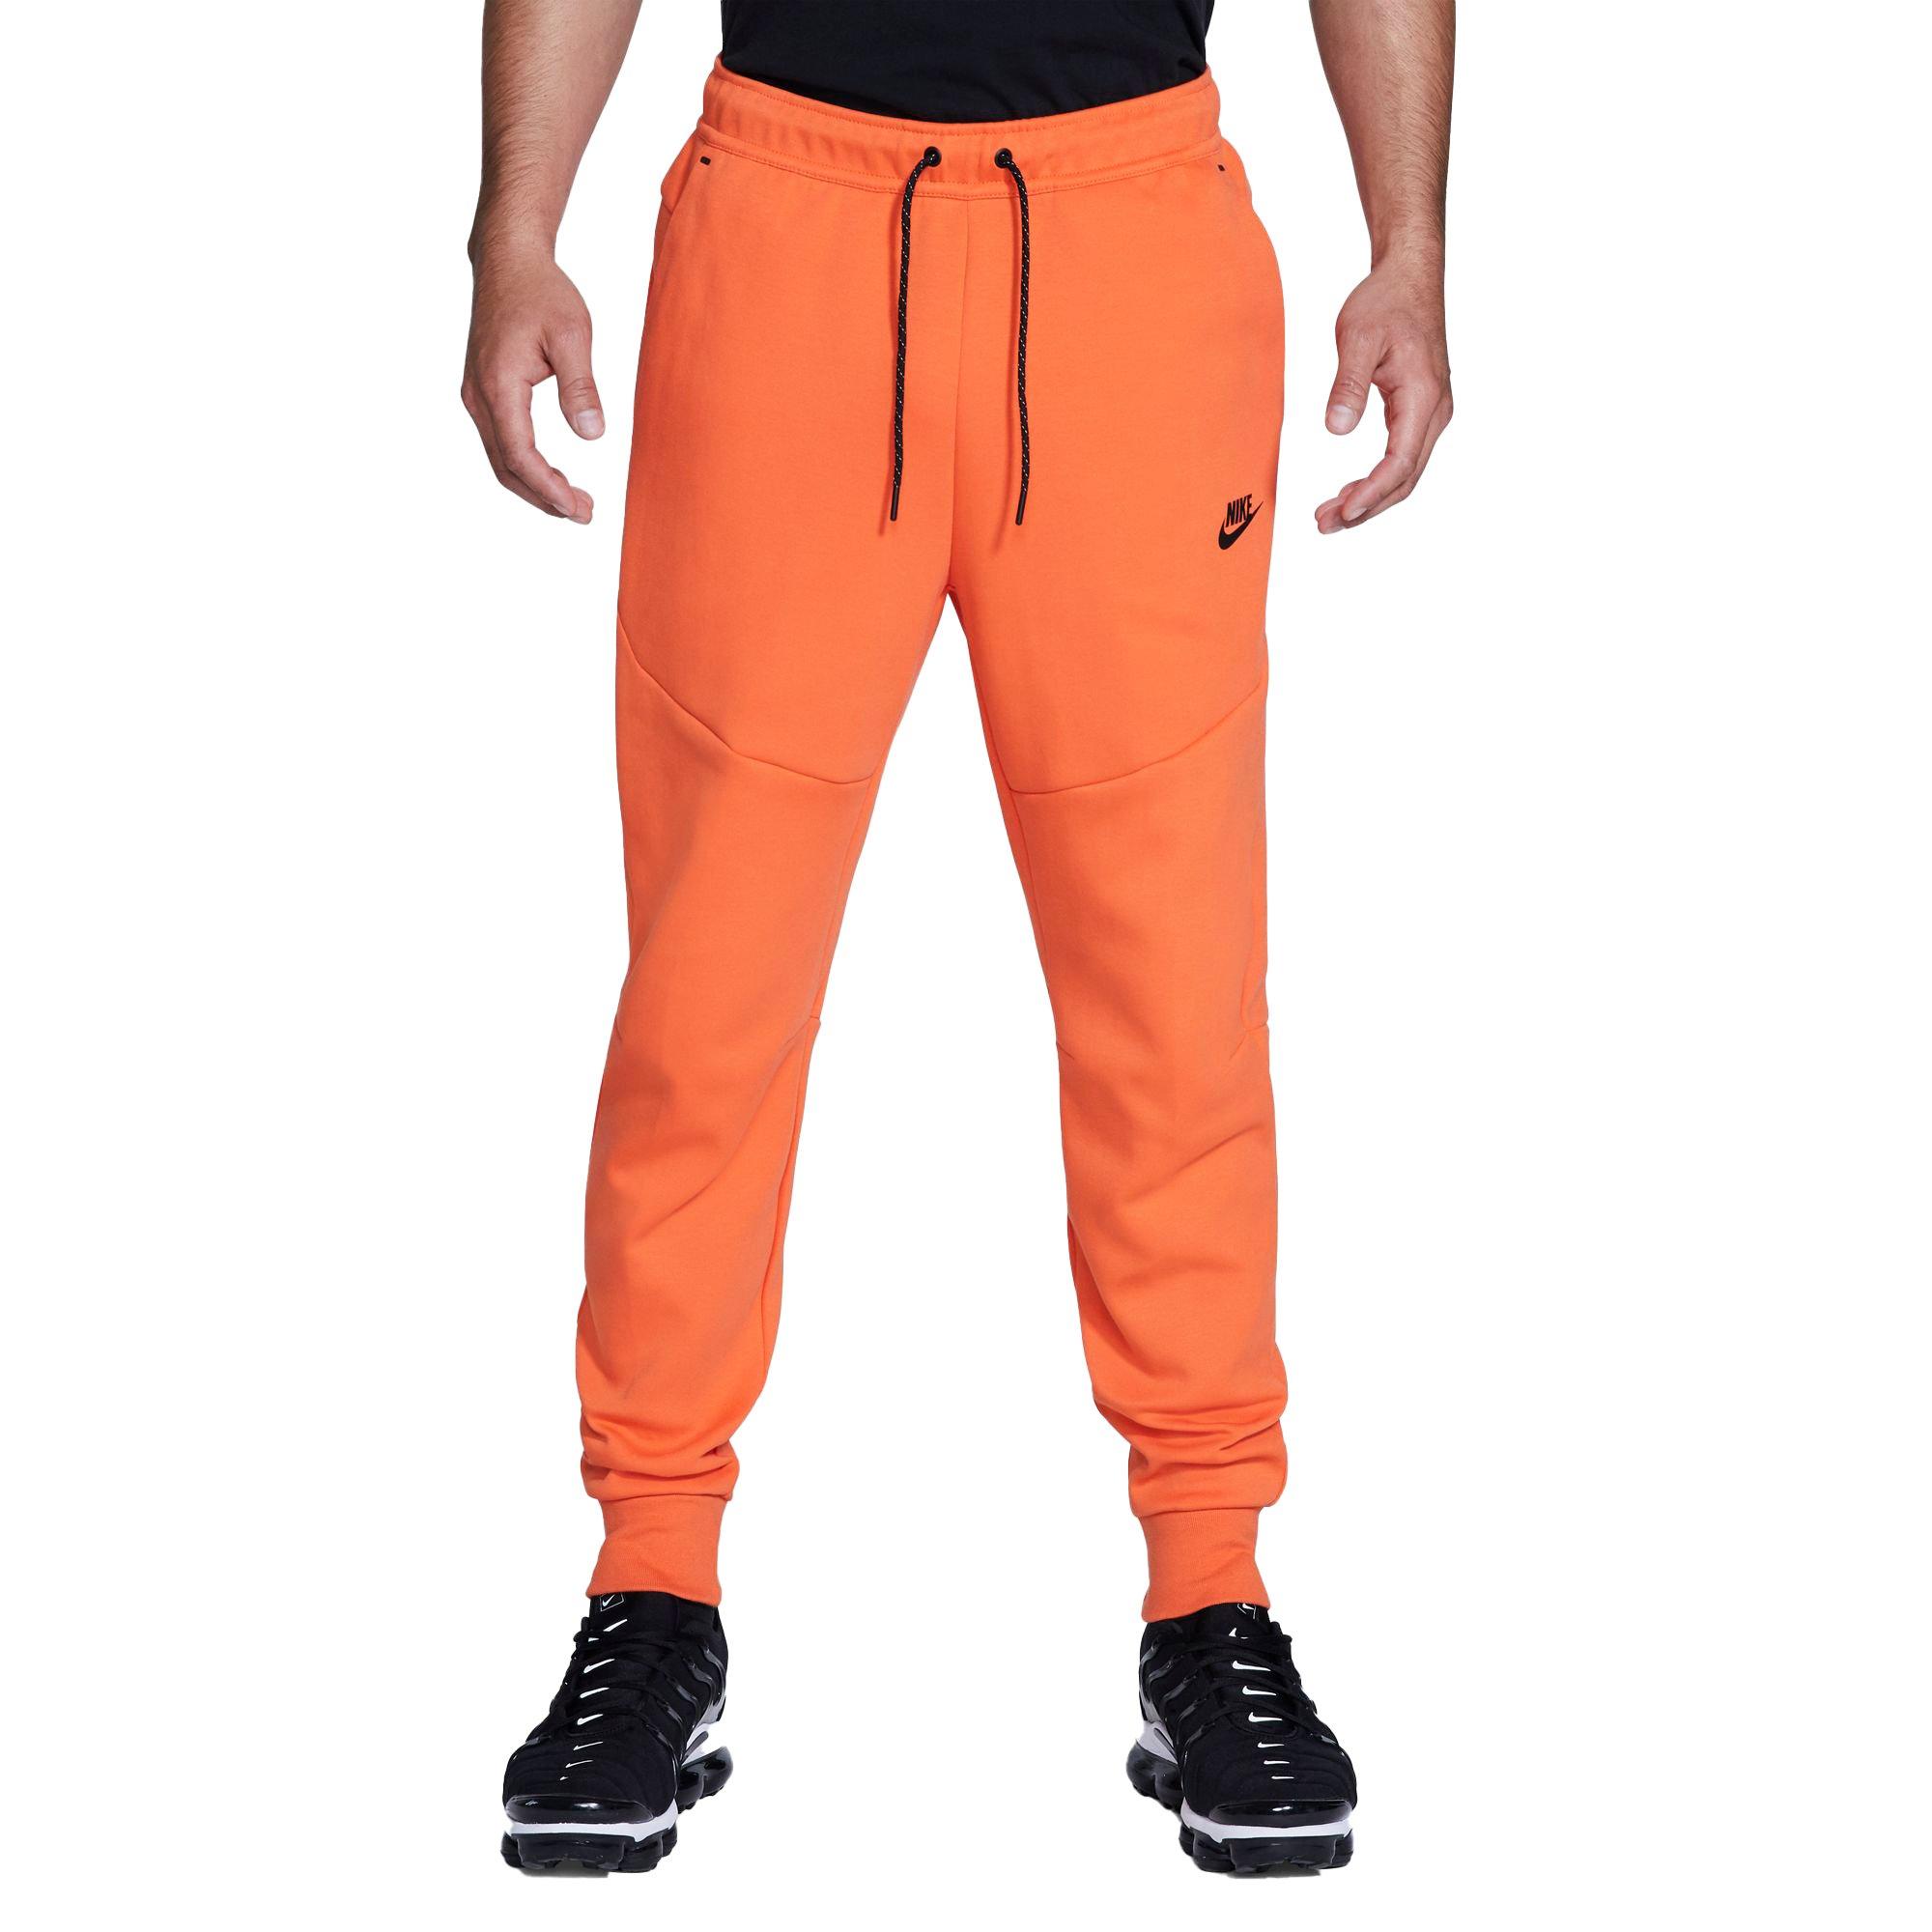 jogger nike orange